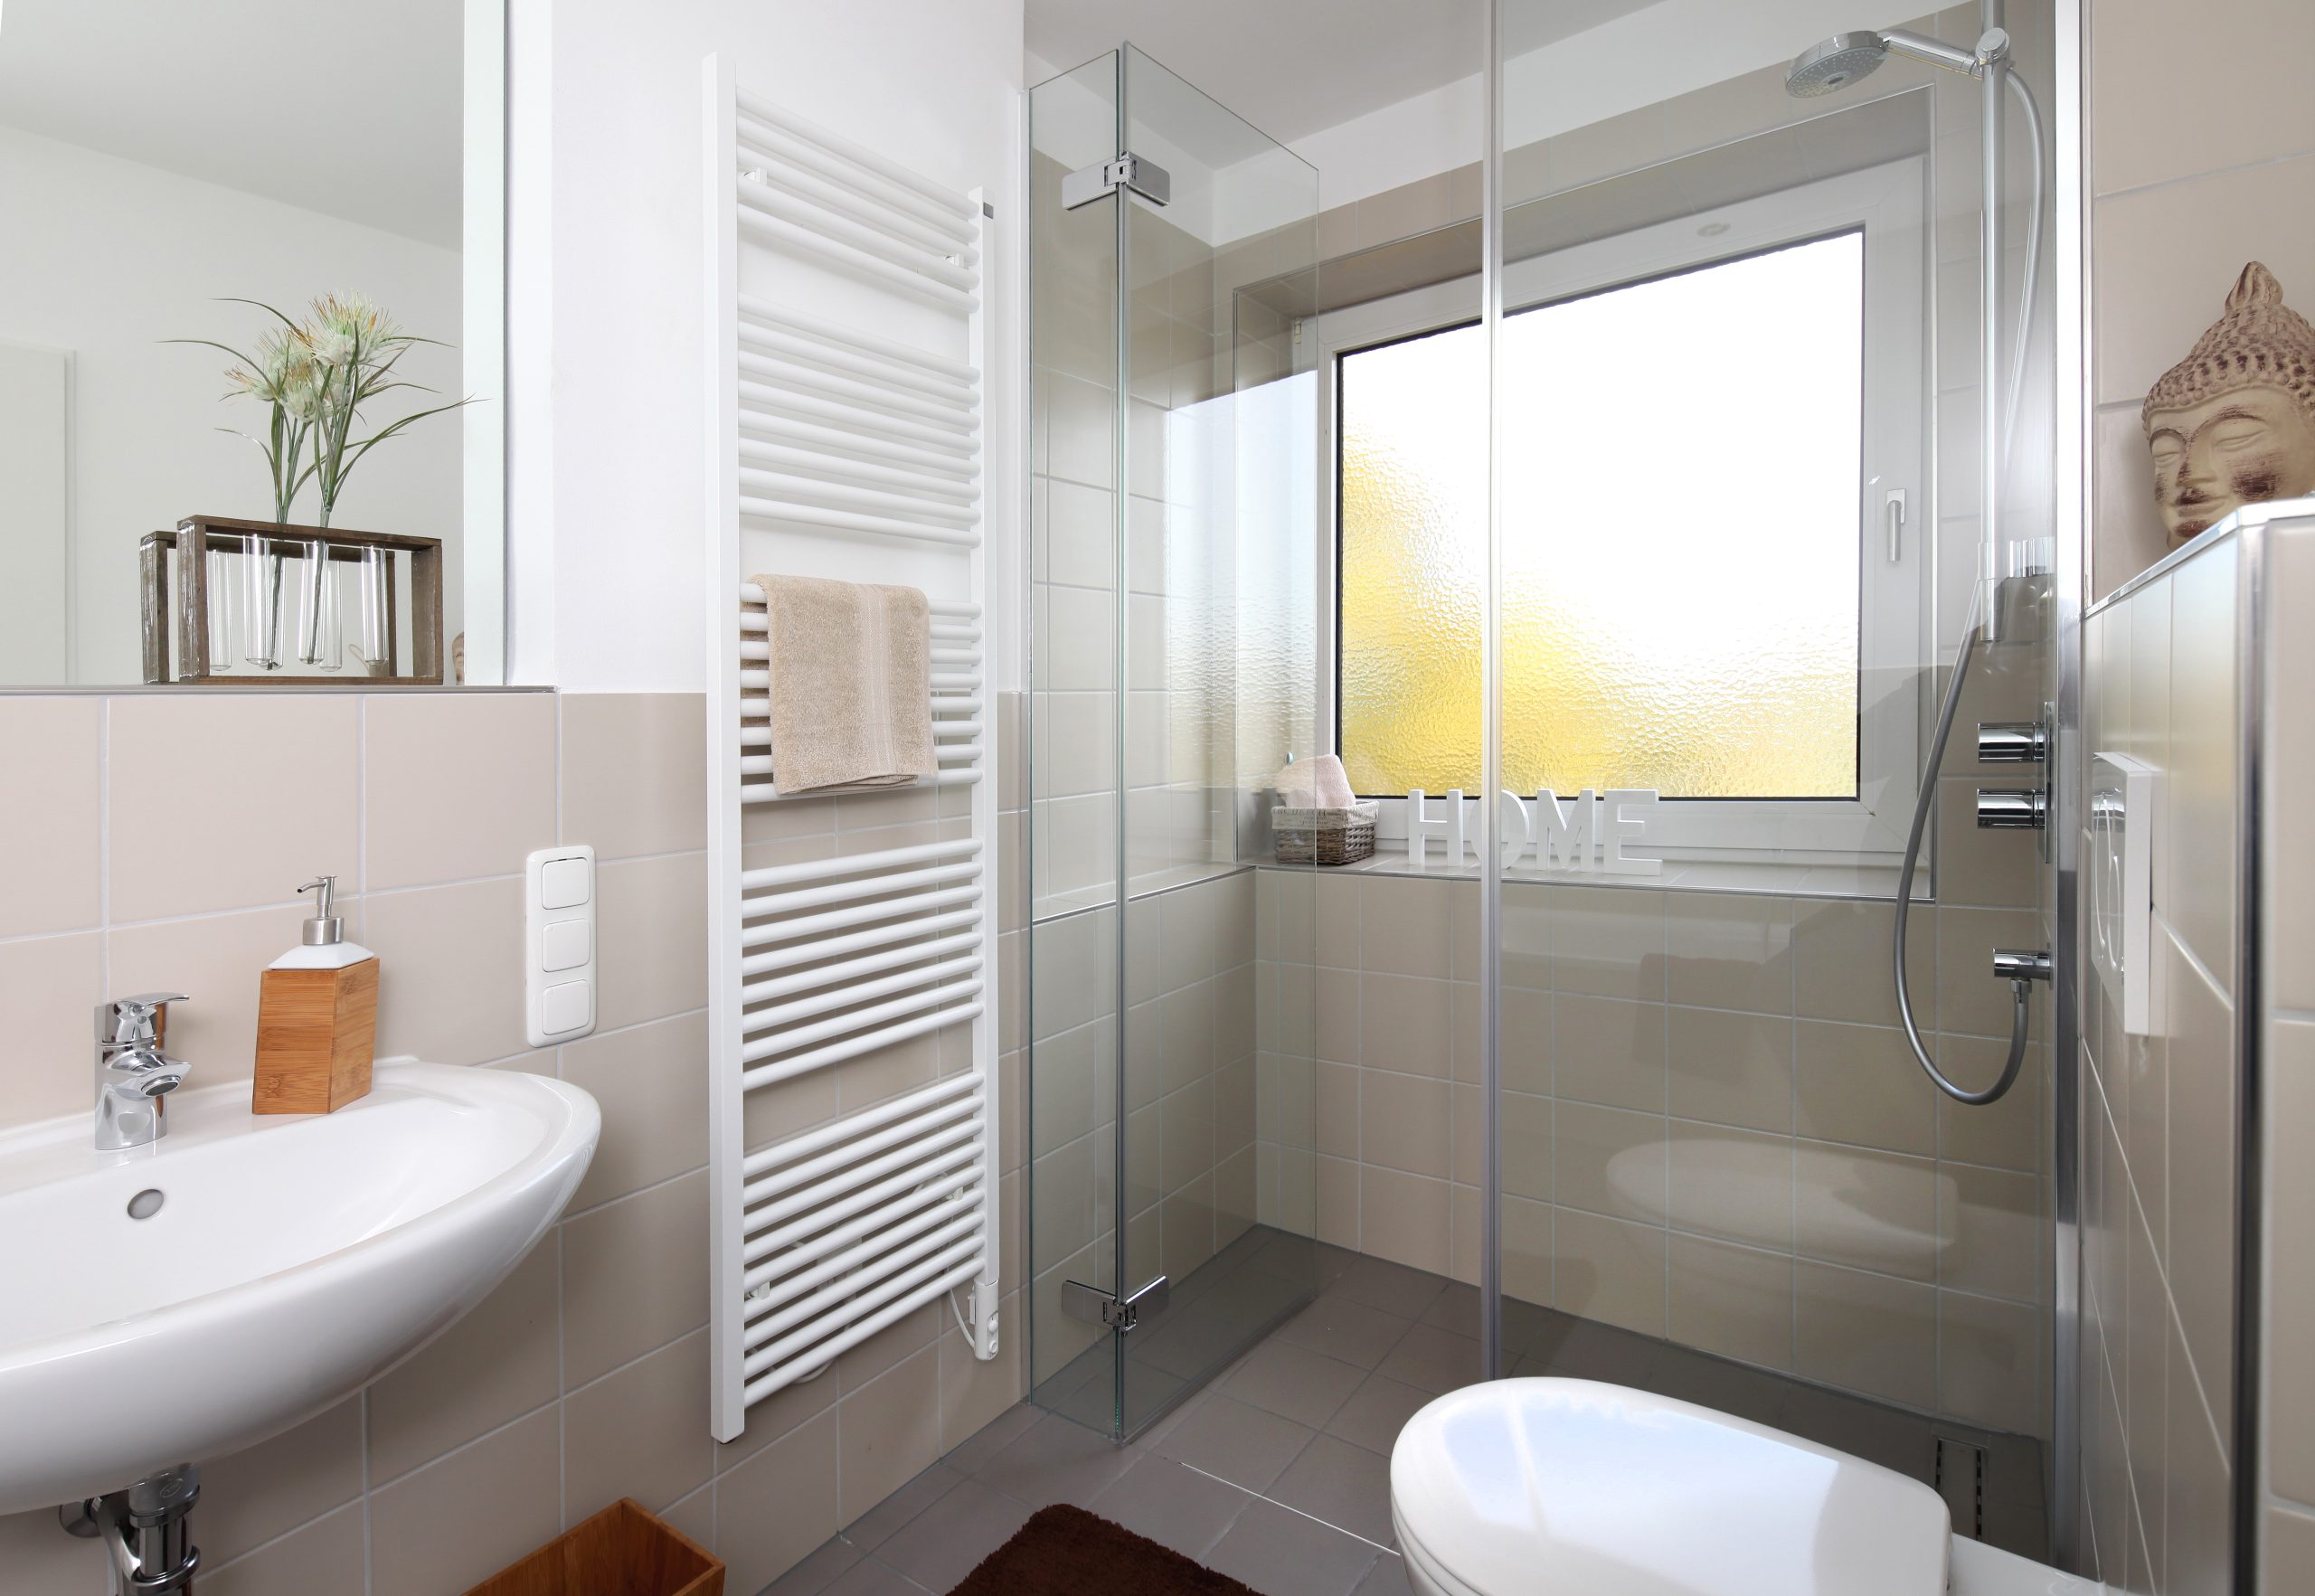 Eine Heizung sollte zum Design des Badezimmers passen und sich harmonisch integrieren lassen. Foto © Jörg Lantelme stock adobe